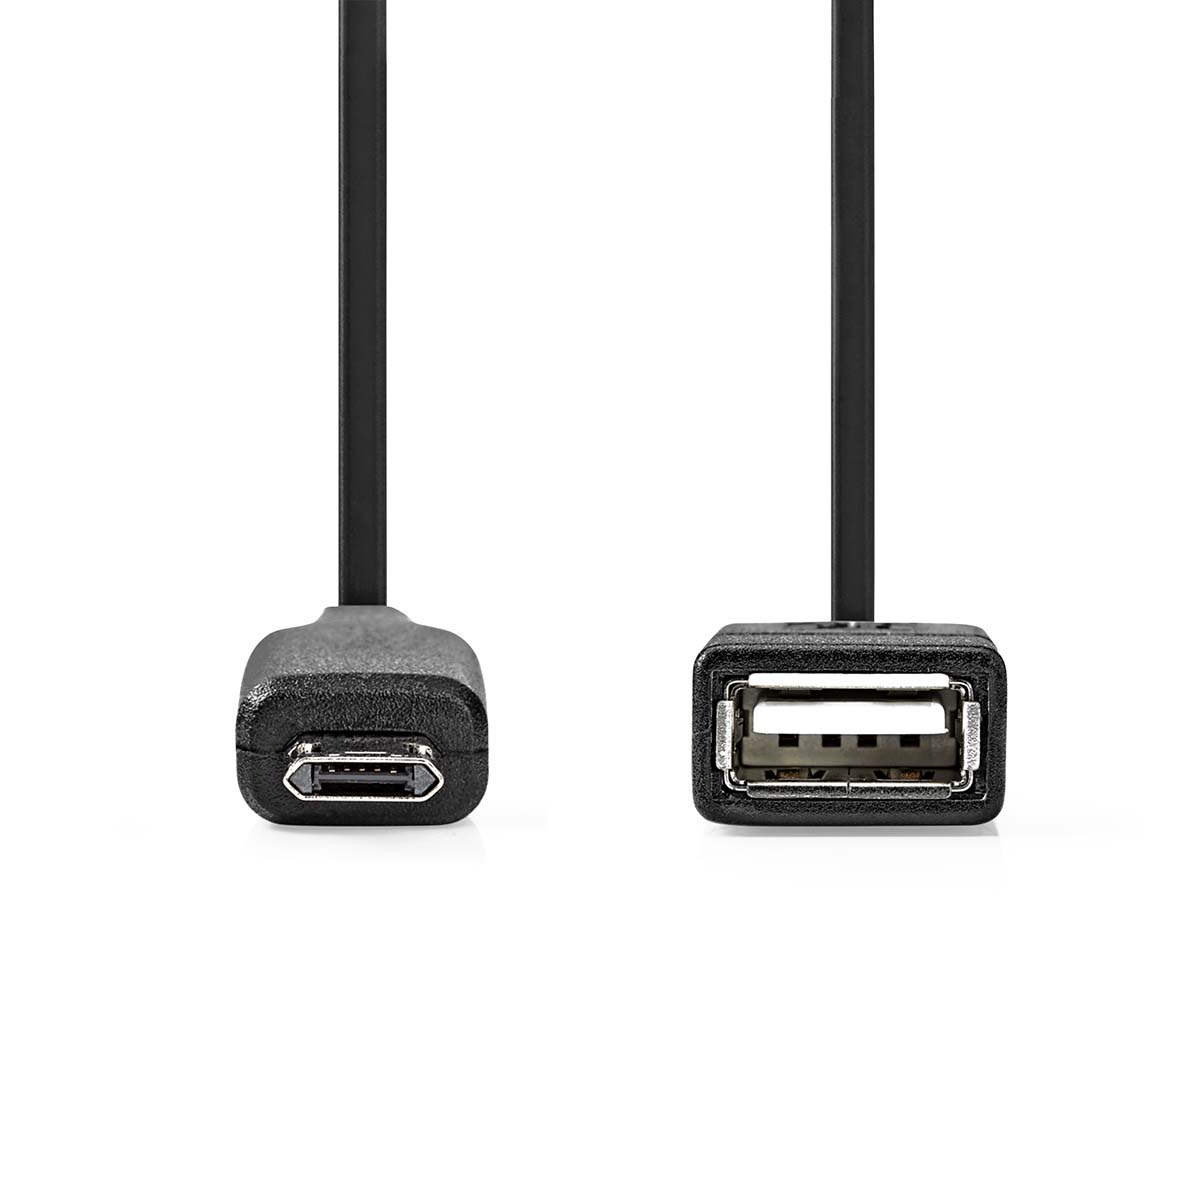 Adapter USB NEDIS Micro-B CCGP60515BK02